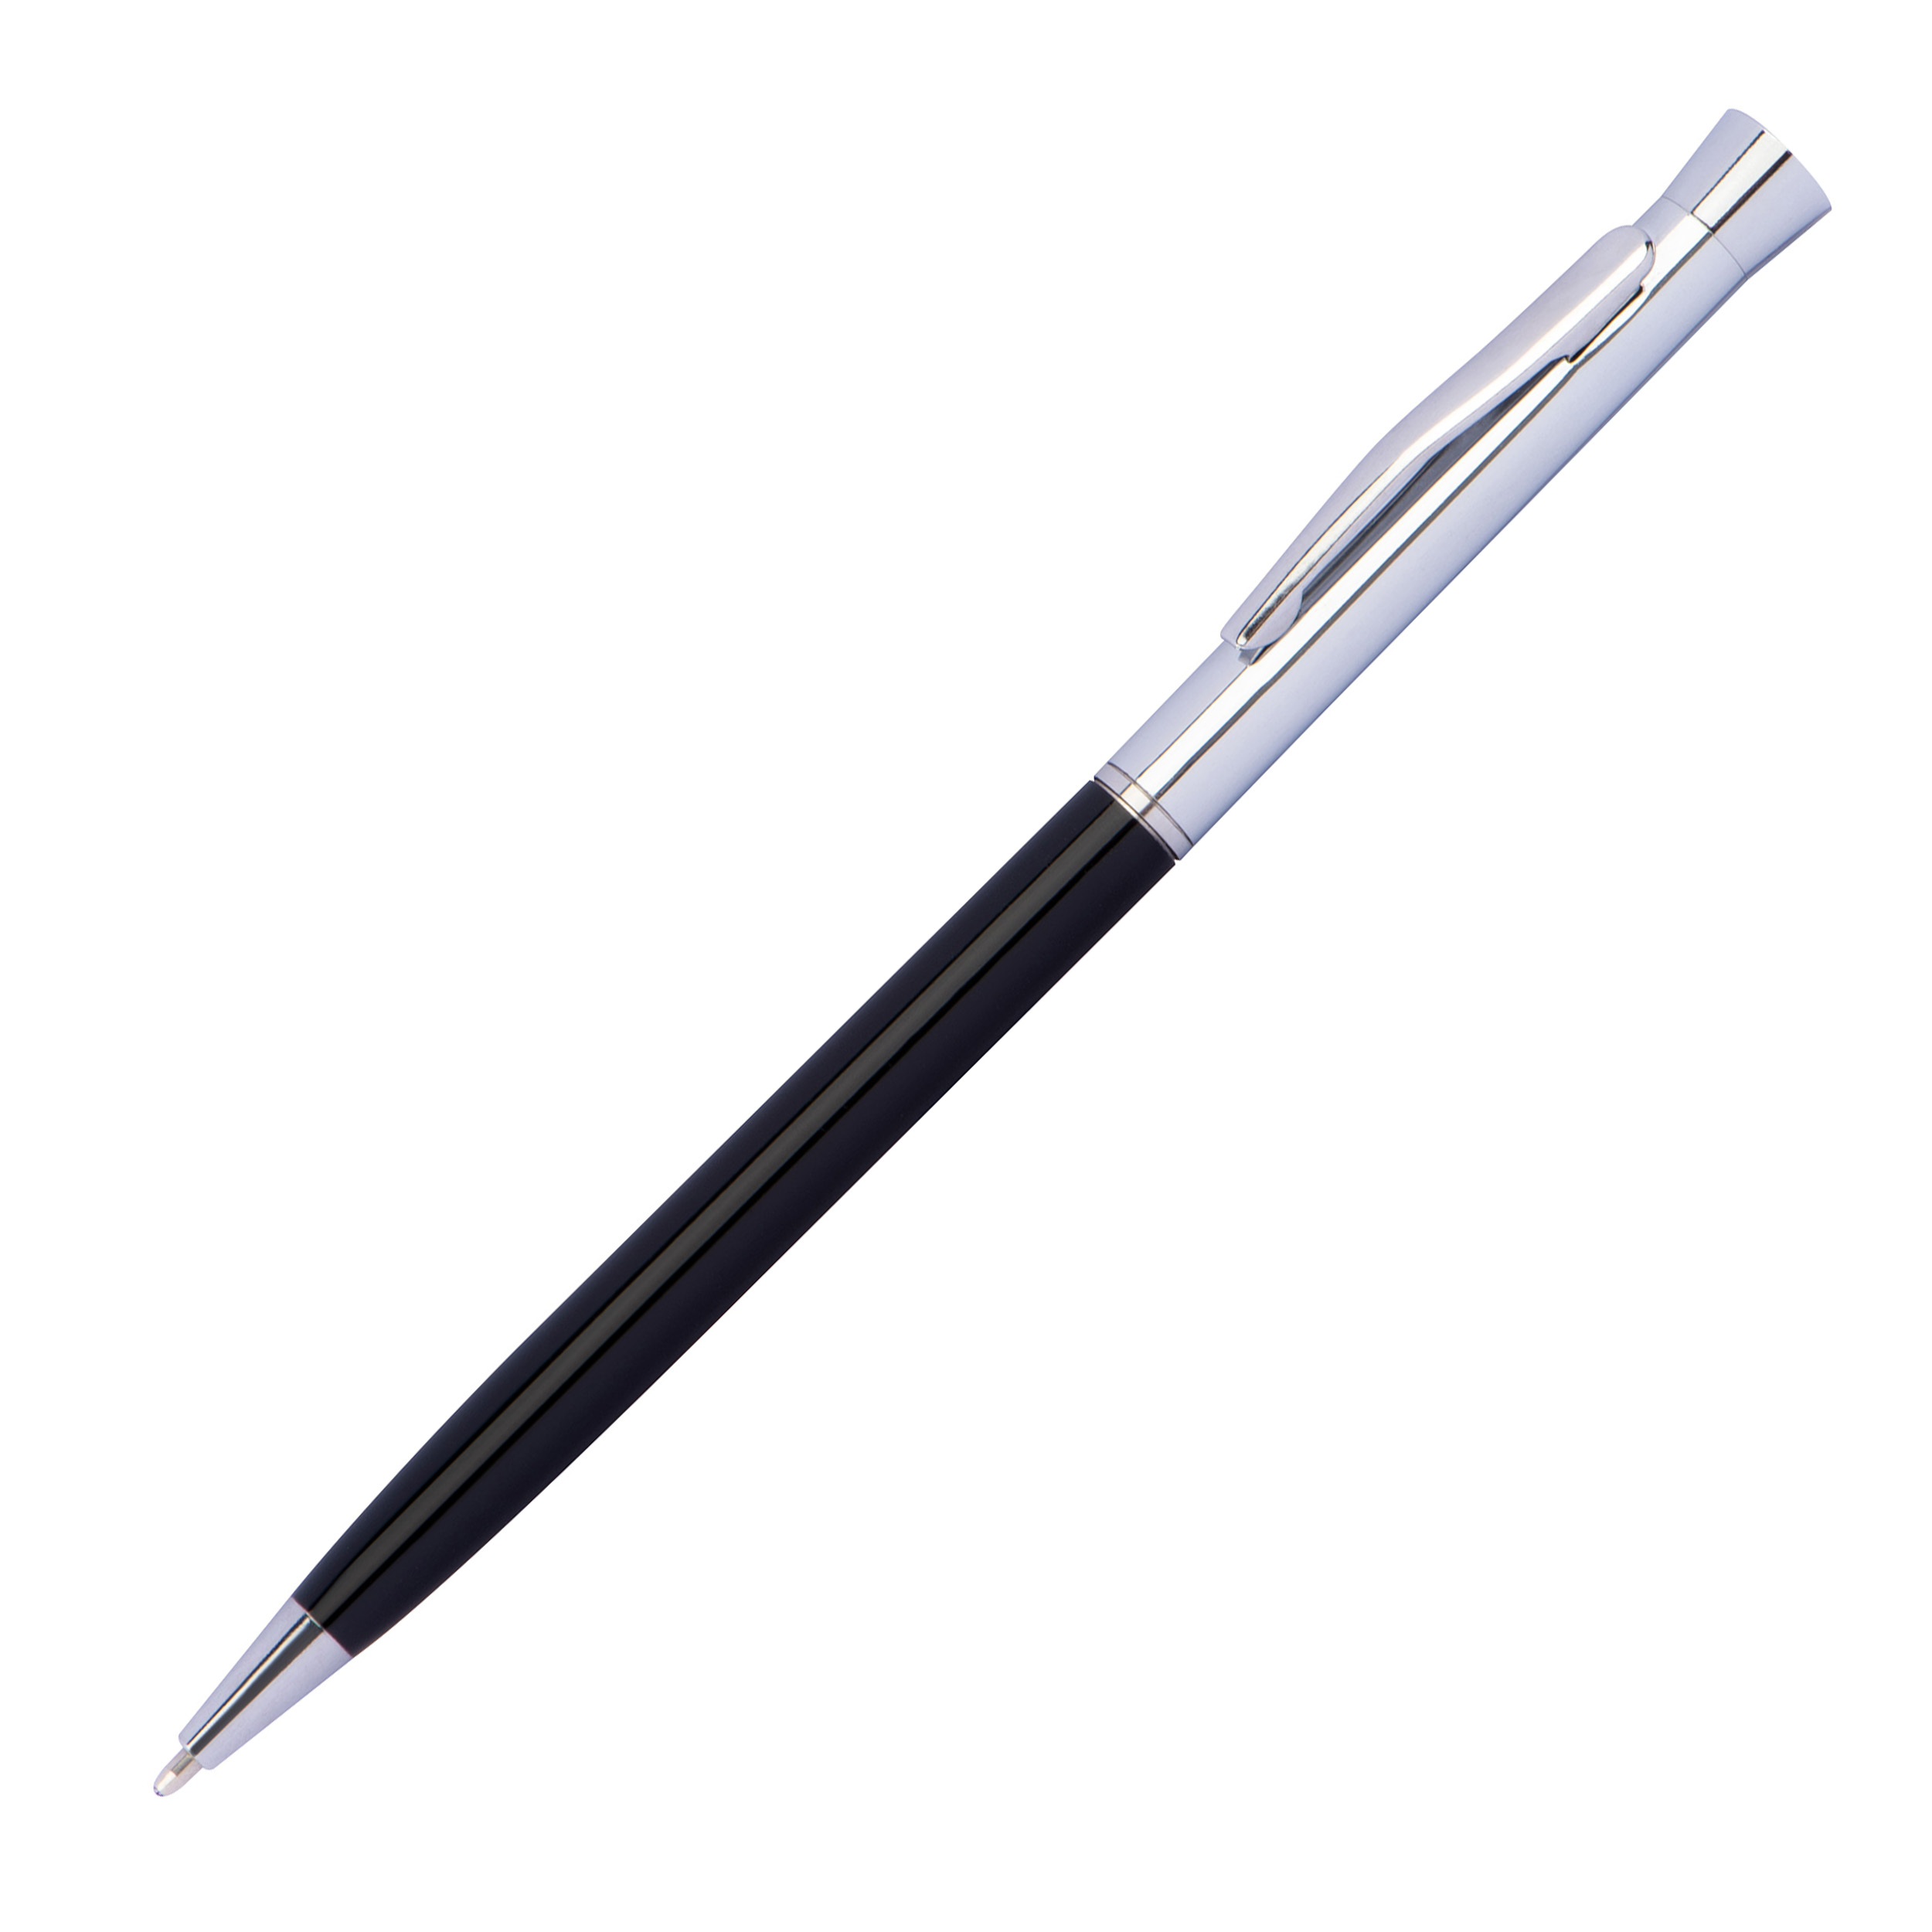 Bolígrafo delgado de metal